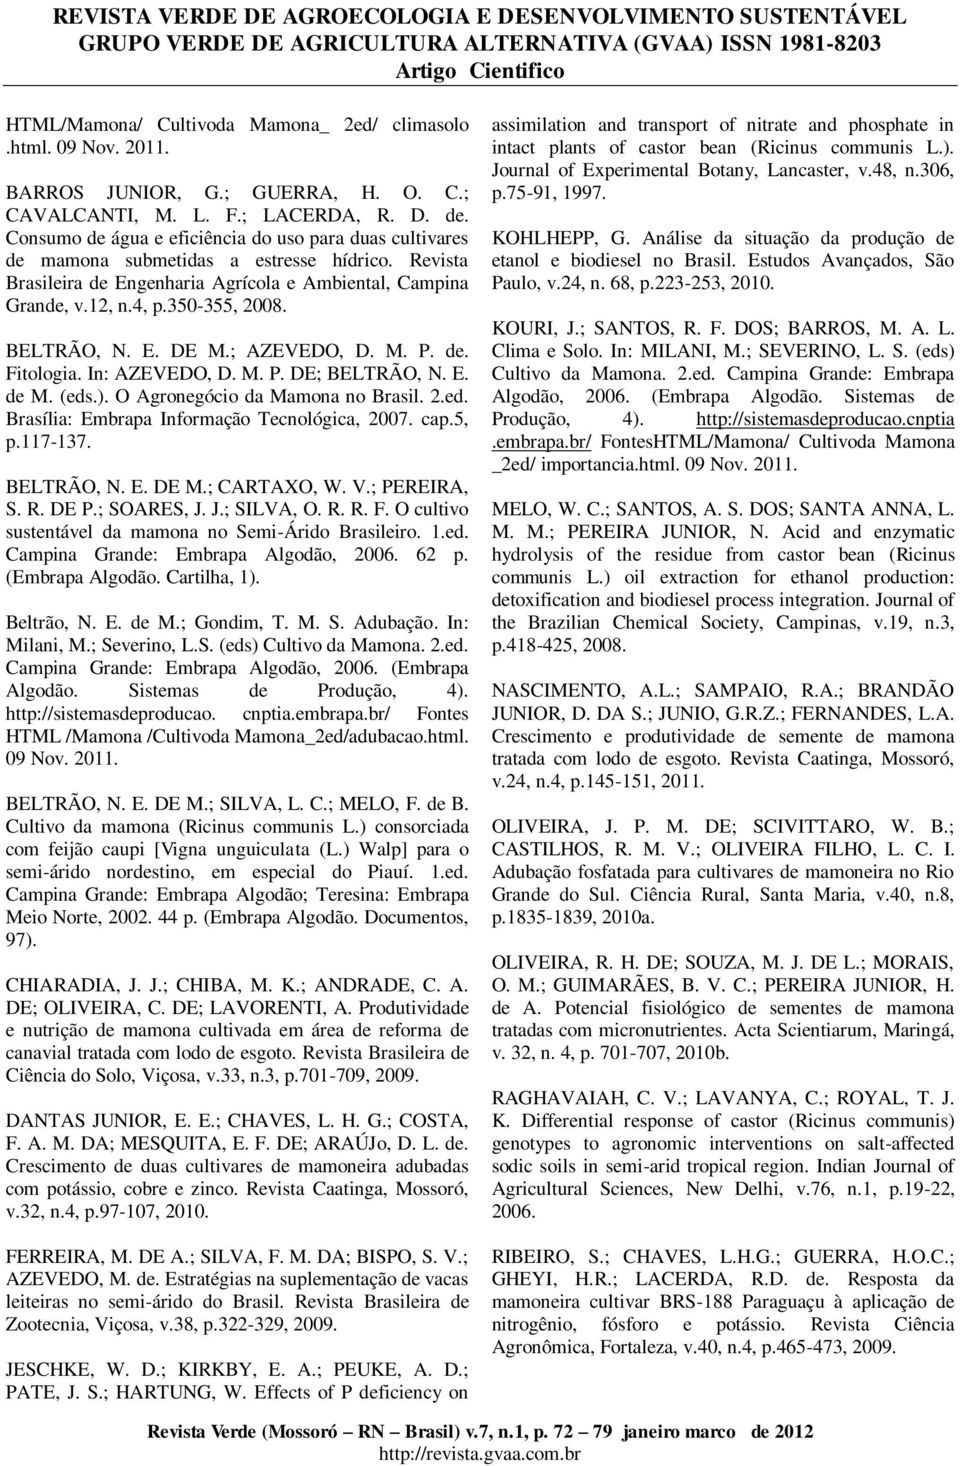 BELTRÃO, N. E. DE M.; AZEVEDO, D. M. P. de. Fitologia. In: AZEVEDO, D. M. P. DE; BELTRÃO, N. E. de M. (eds.). O Agronegócio da Mamona no Brasil. 2.ed. Brasília: Embrapa Informação Tecnológica, 2007.